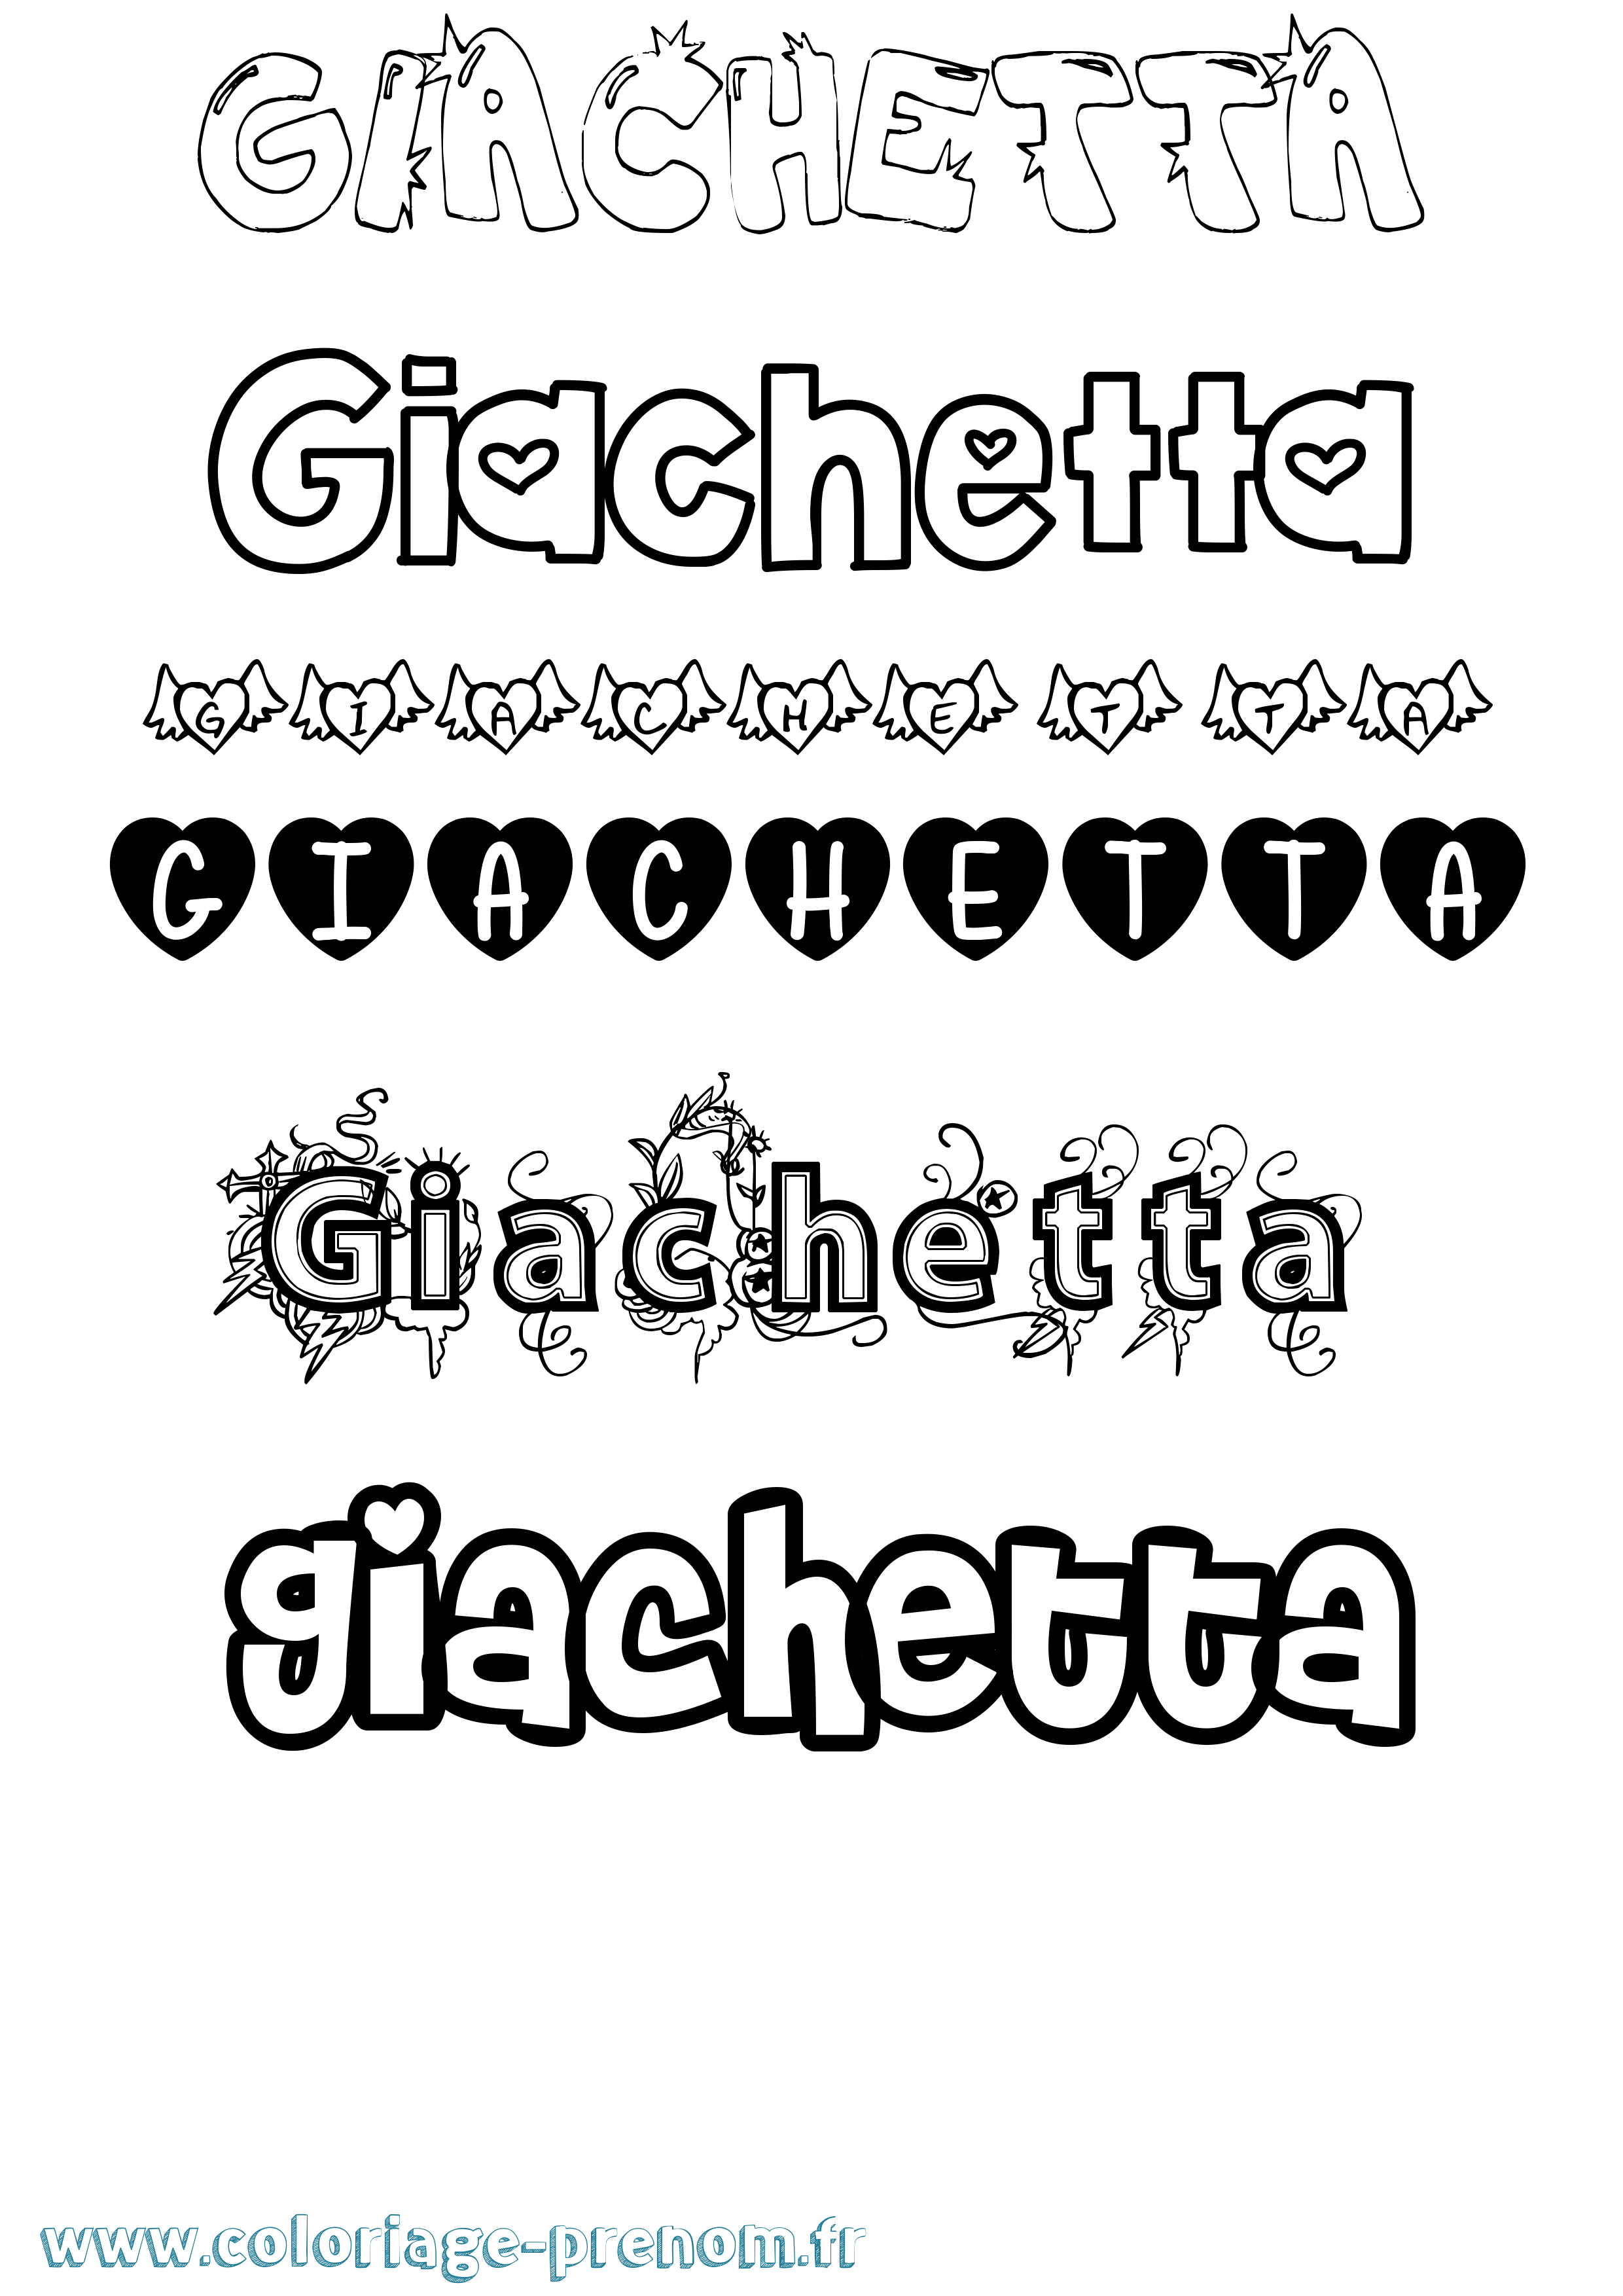 Coloriage prénom Giachetta Girly